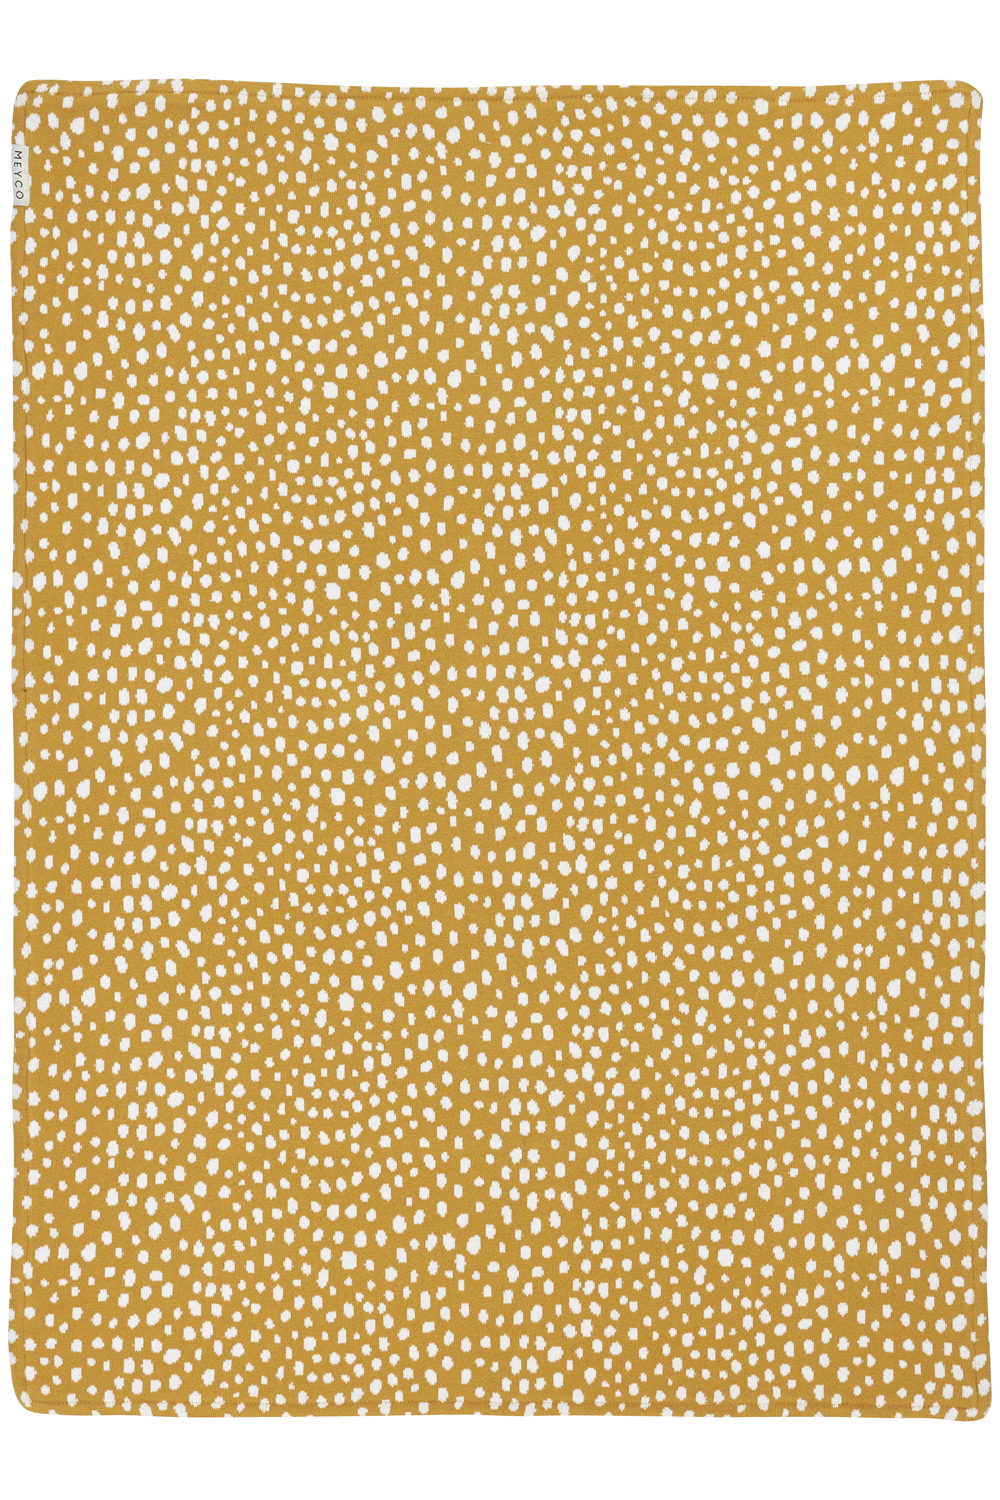 Babydecke Cheetah velvet - honey gold - 75x100cm